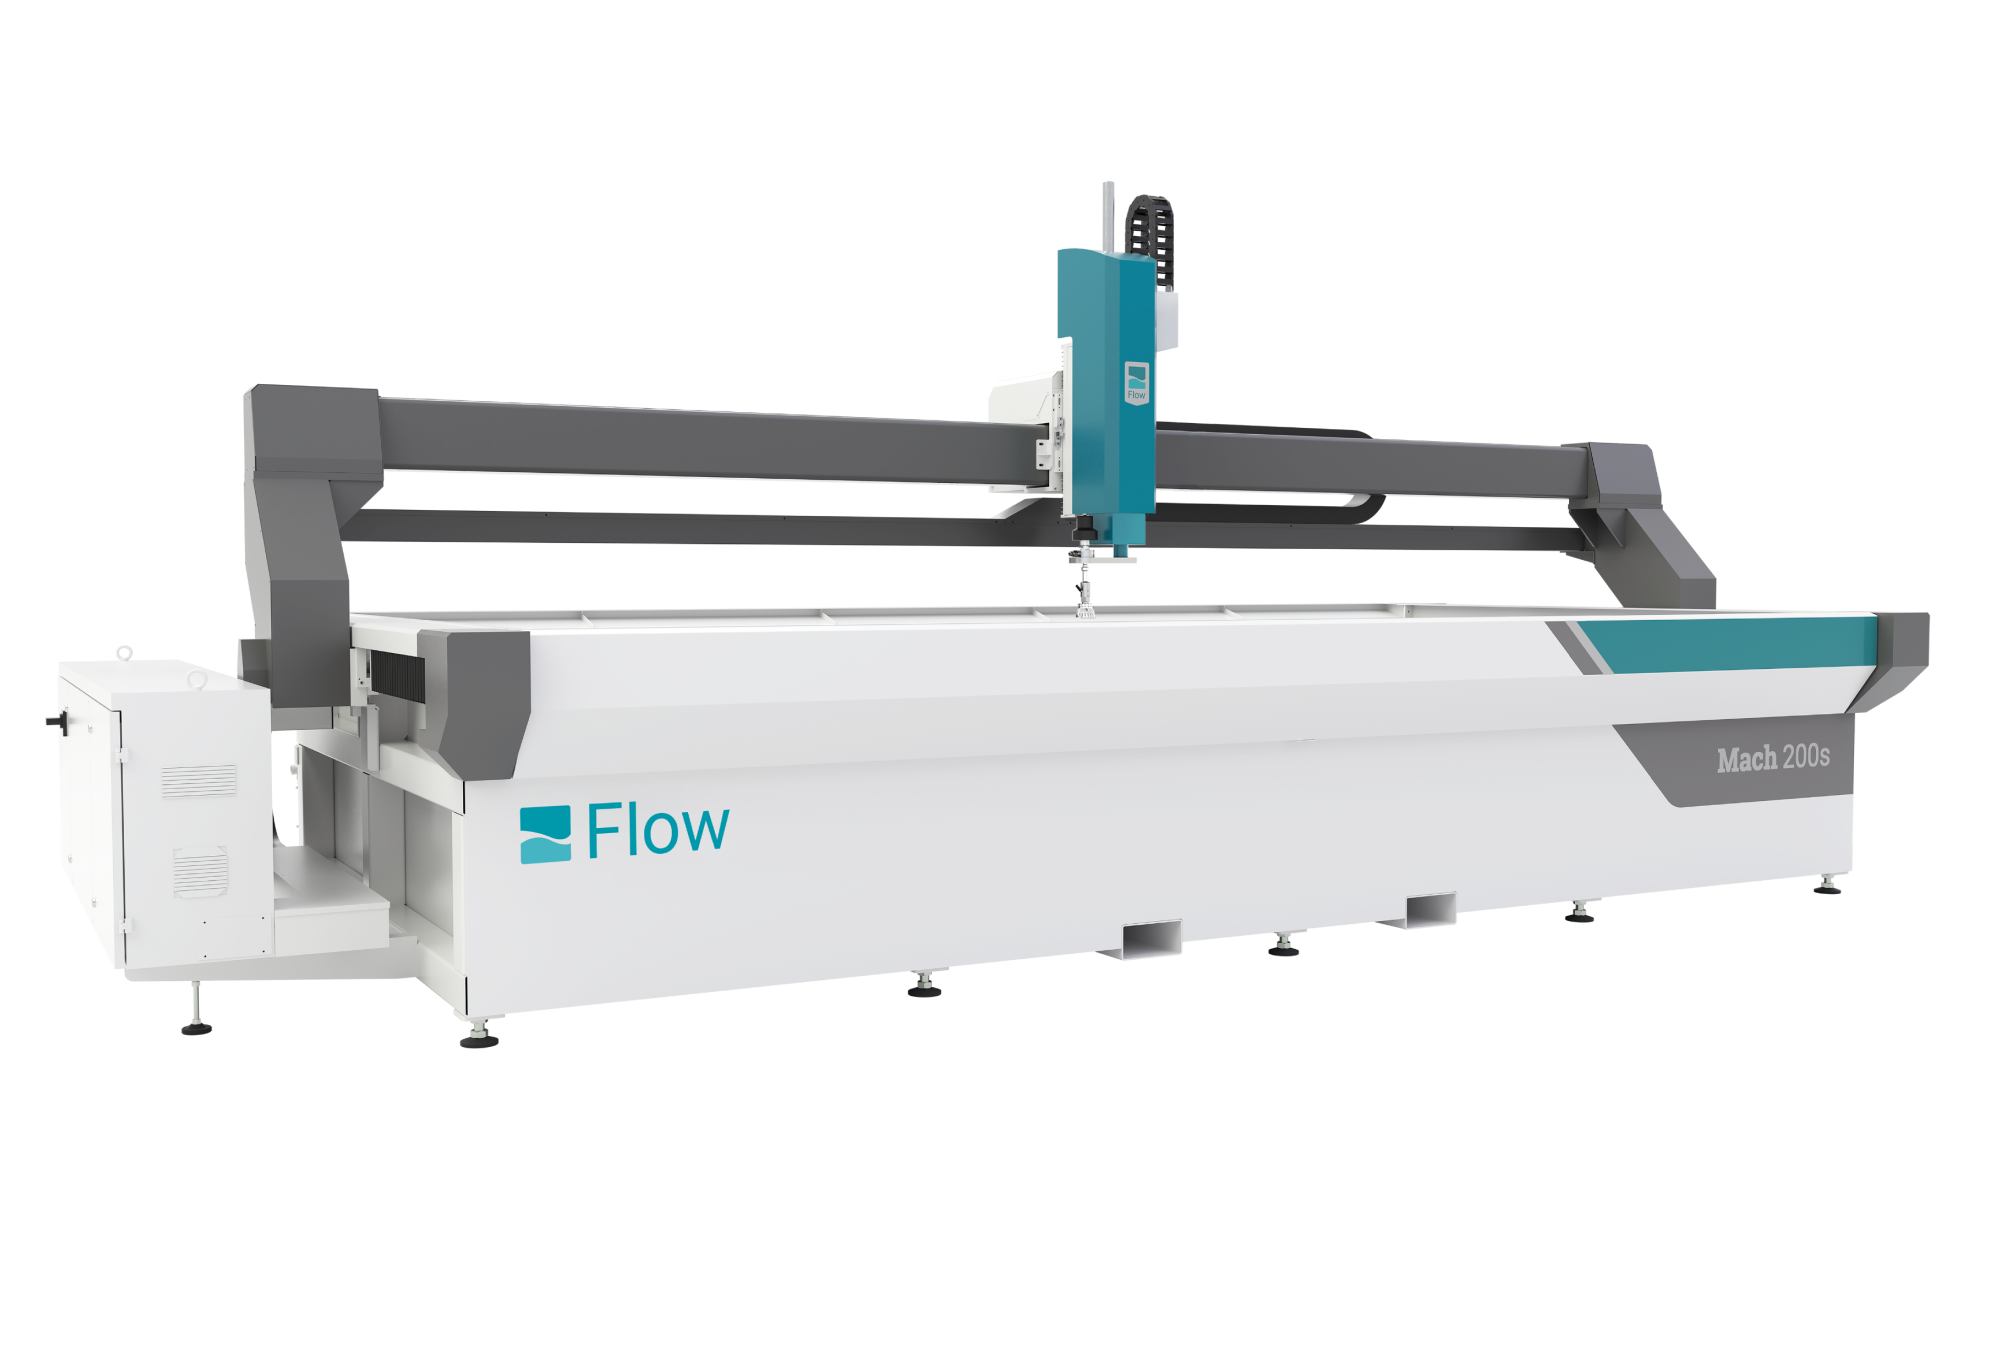 Flow Mach 200s Waterjet Machine